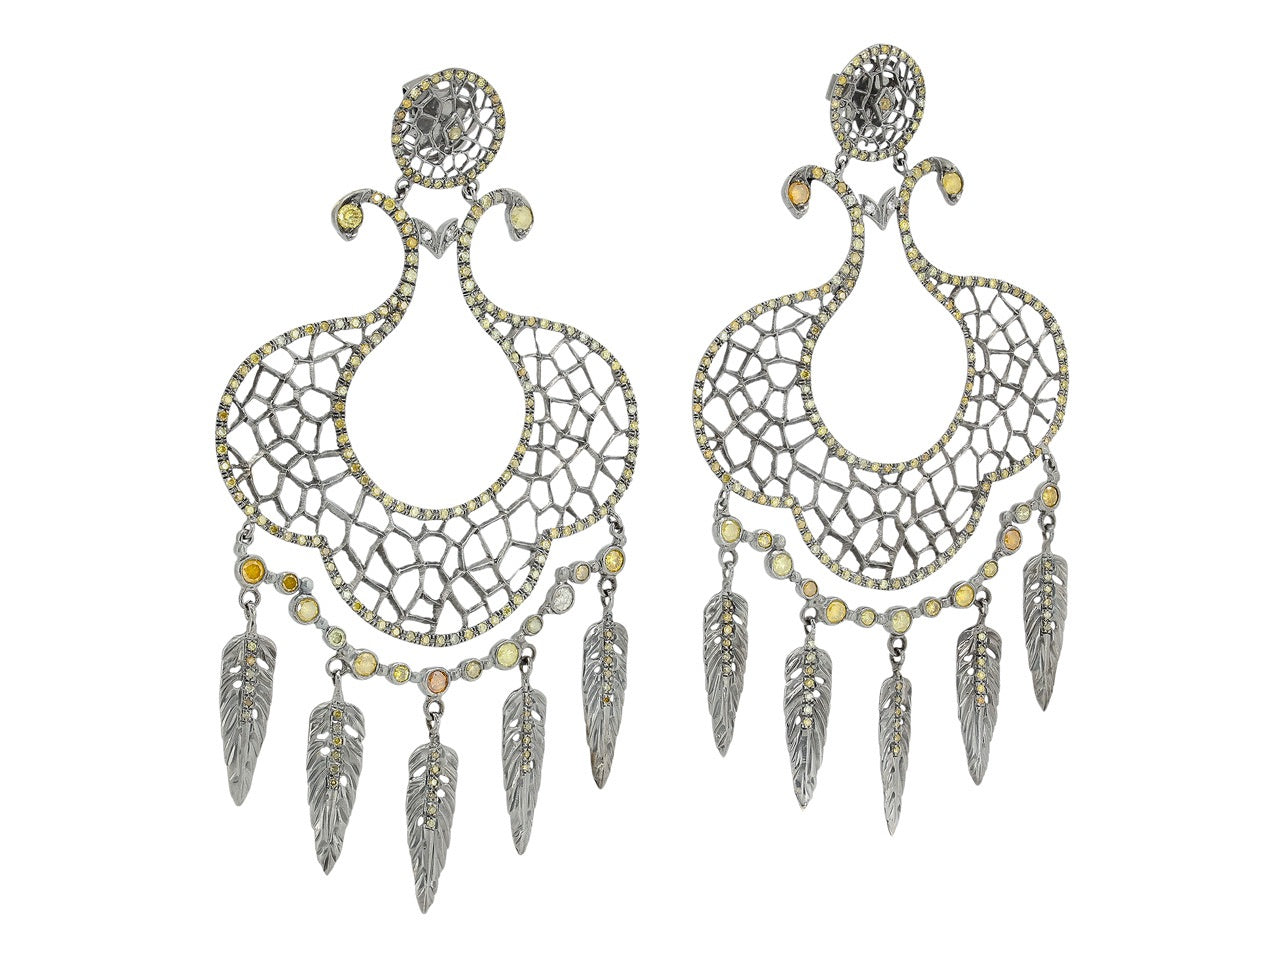 Loree Rodkin Dreamcatcher Earrings in 18K Blackened Gold